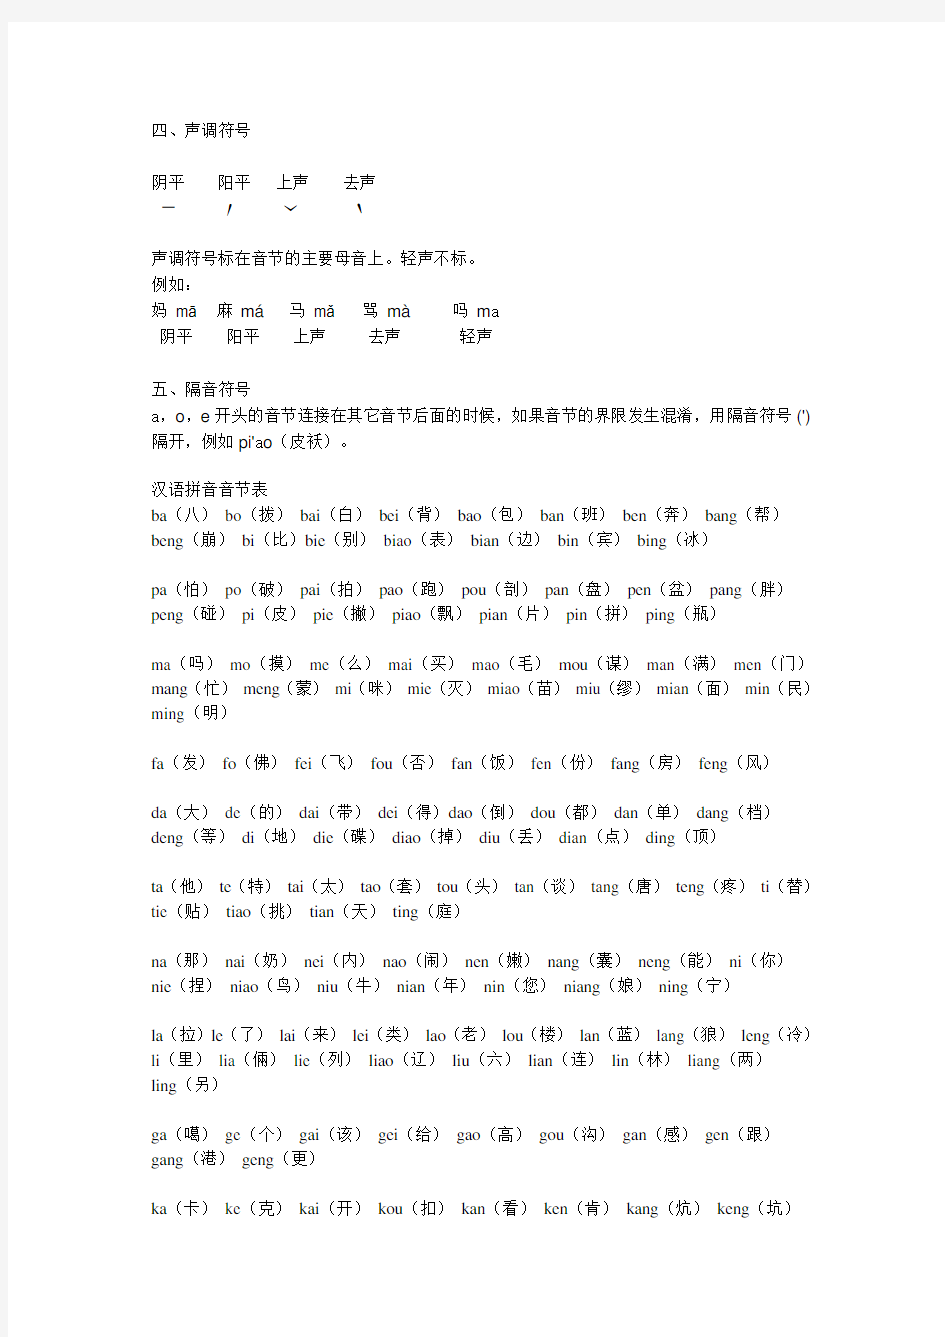 汉语拼音初学者使用资料